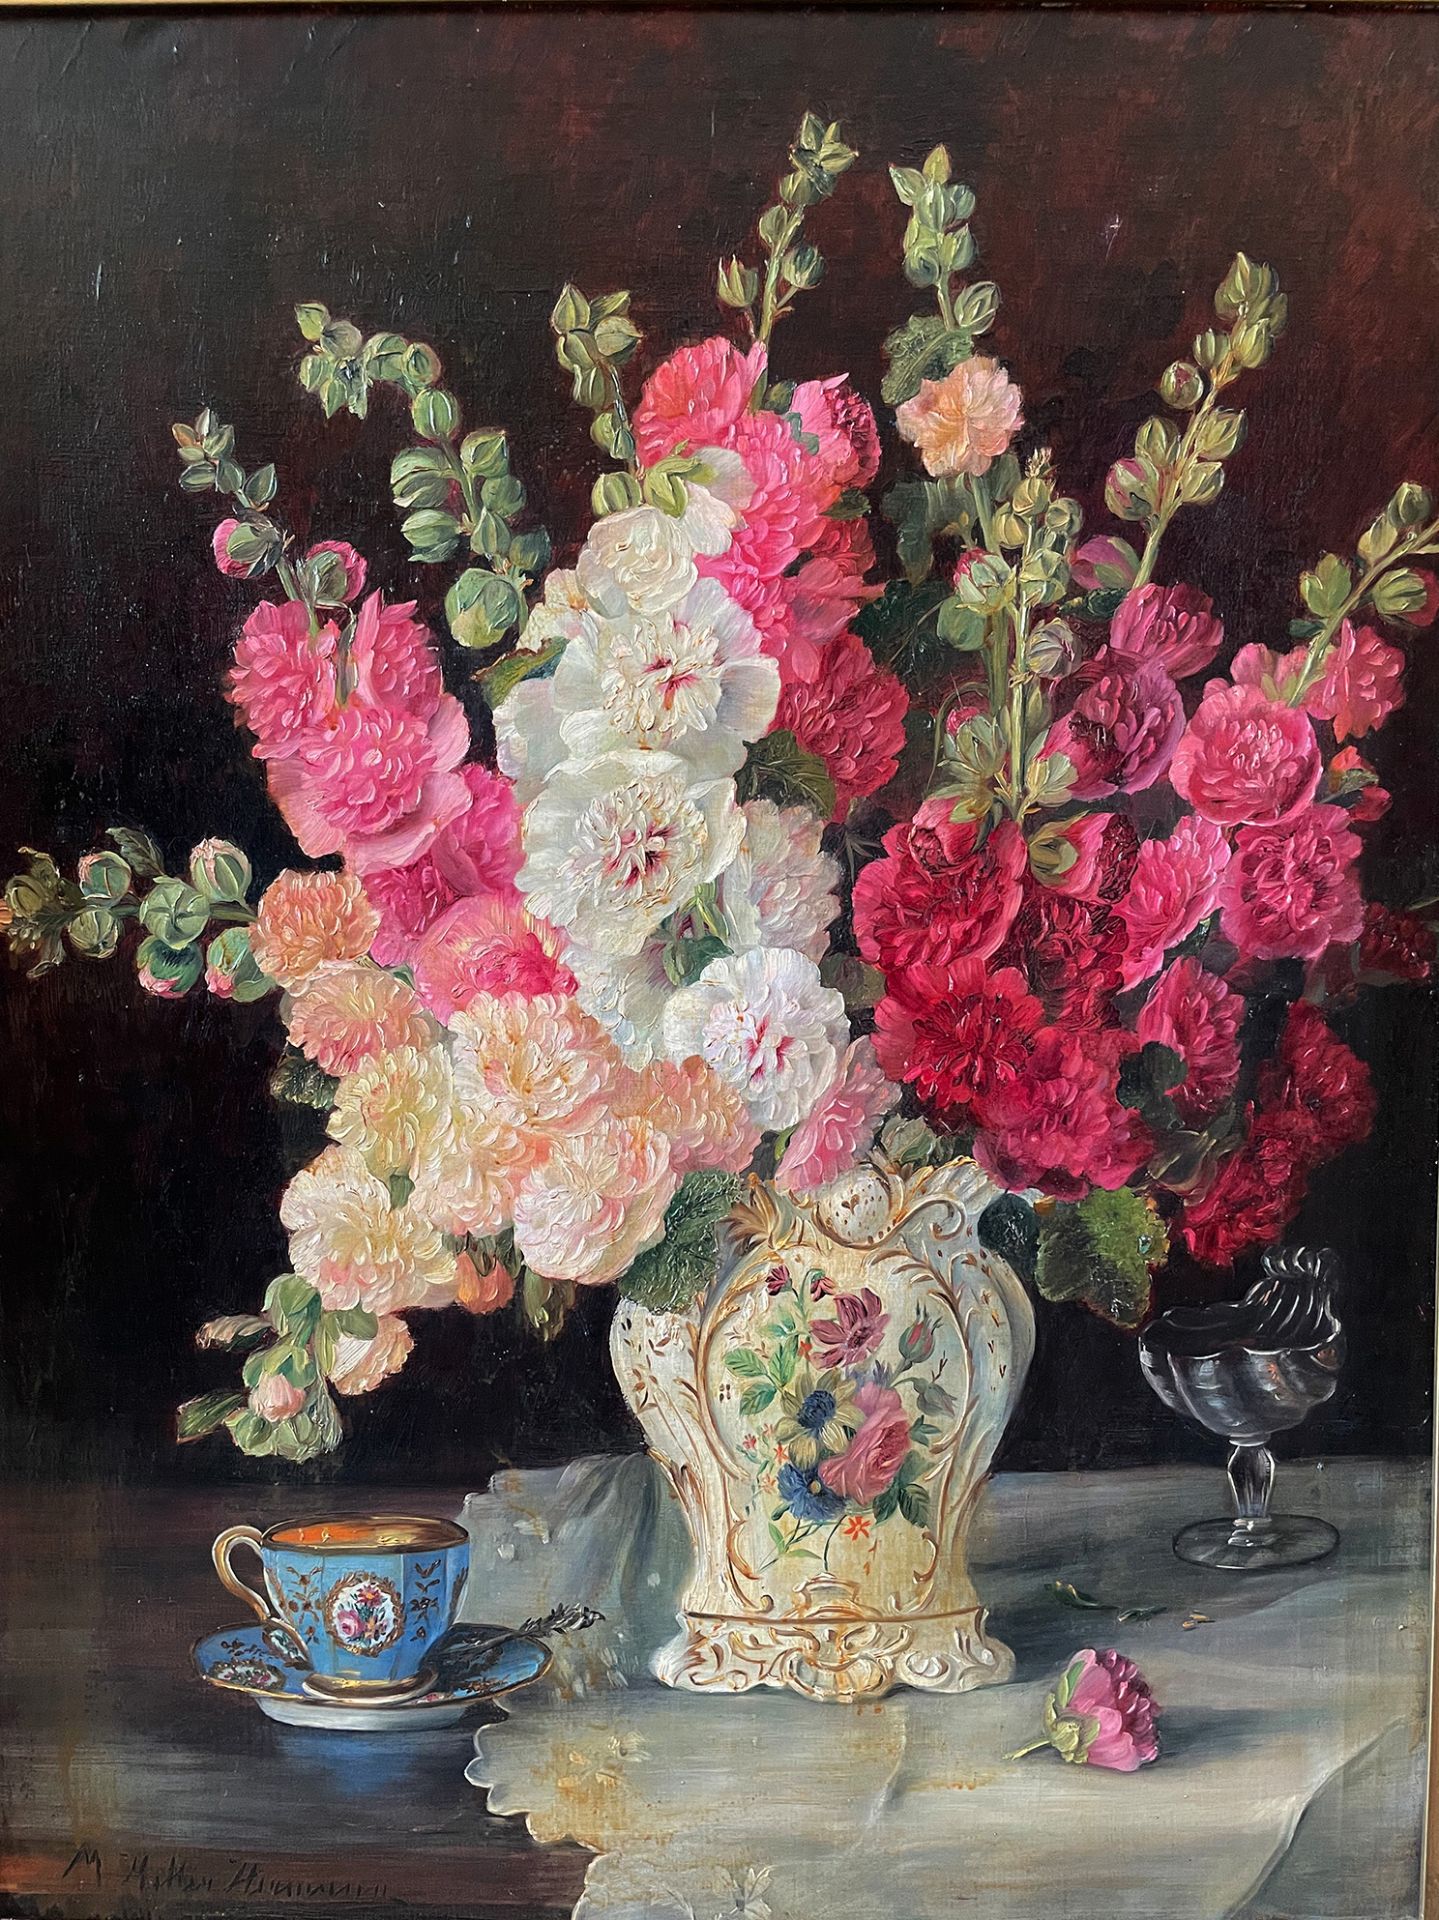 Unbekannter Künstler, Blumenstilleben mit Gladiolen, in Biedermeiervase, daneben Sammlertasse in